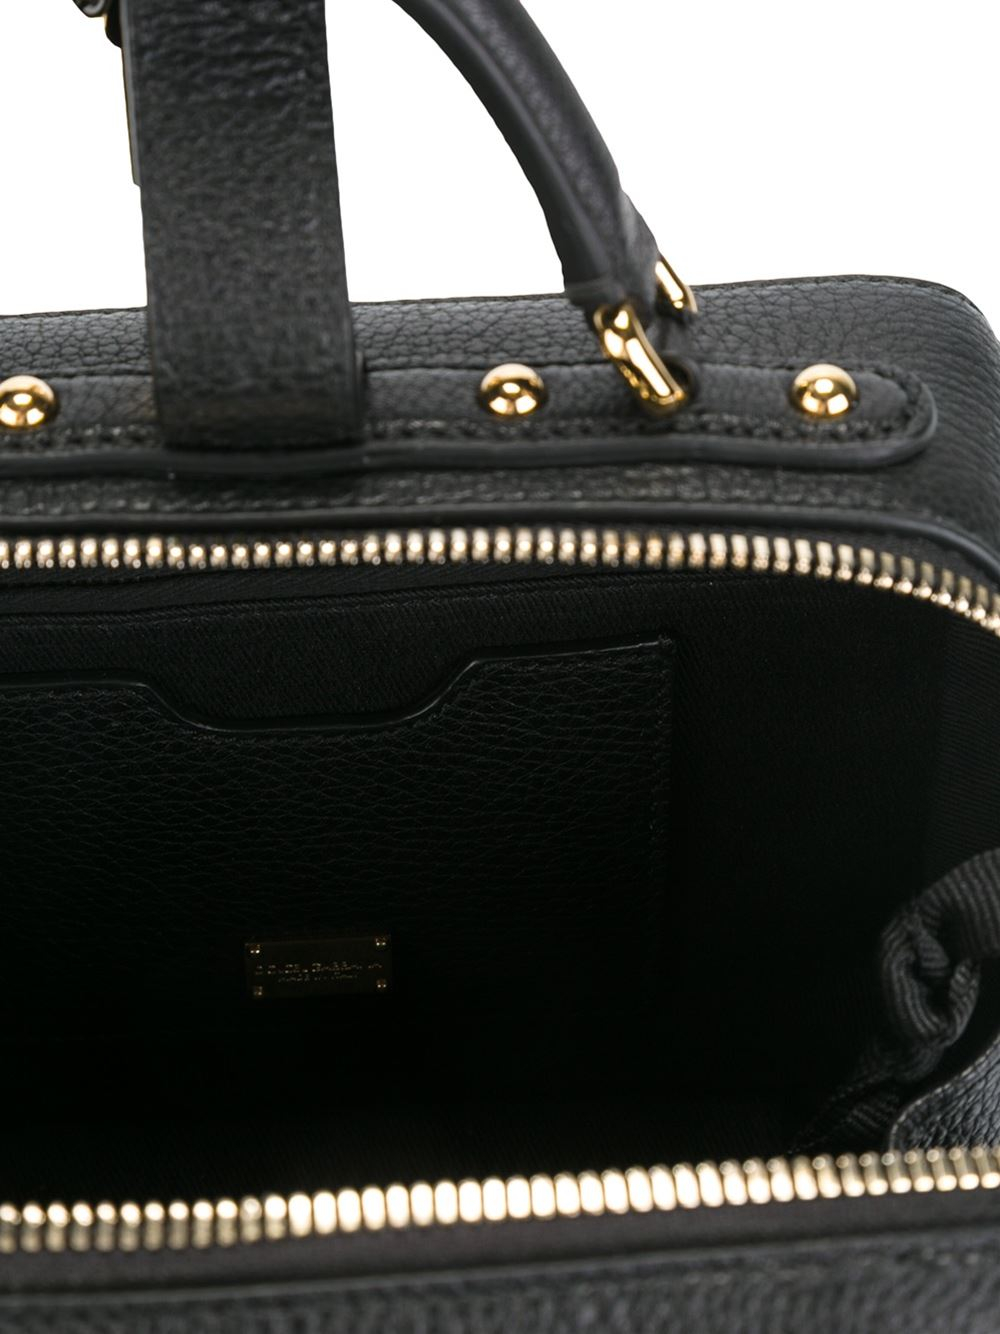 Lyst - Dolce & gabbana 'Dolce' Shoulder Bag in Black